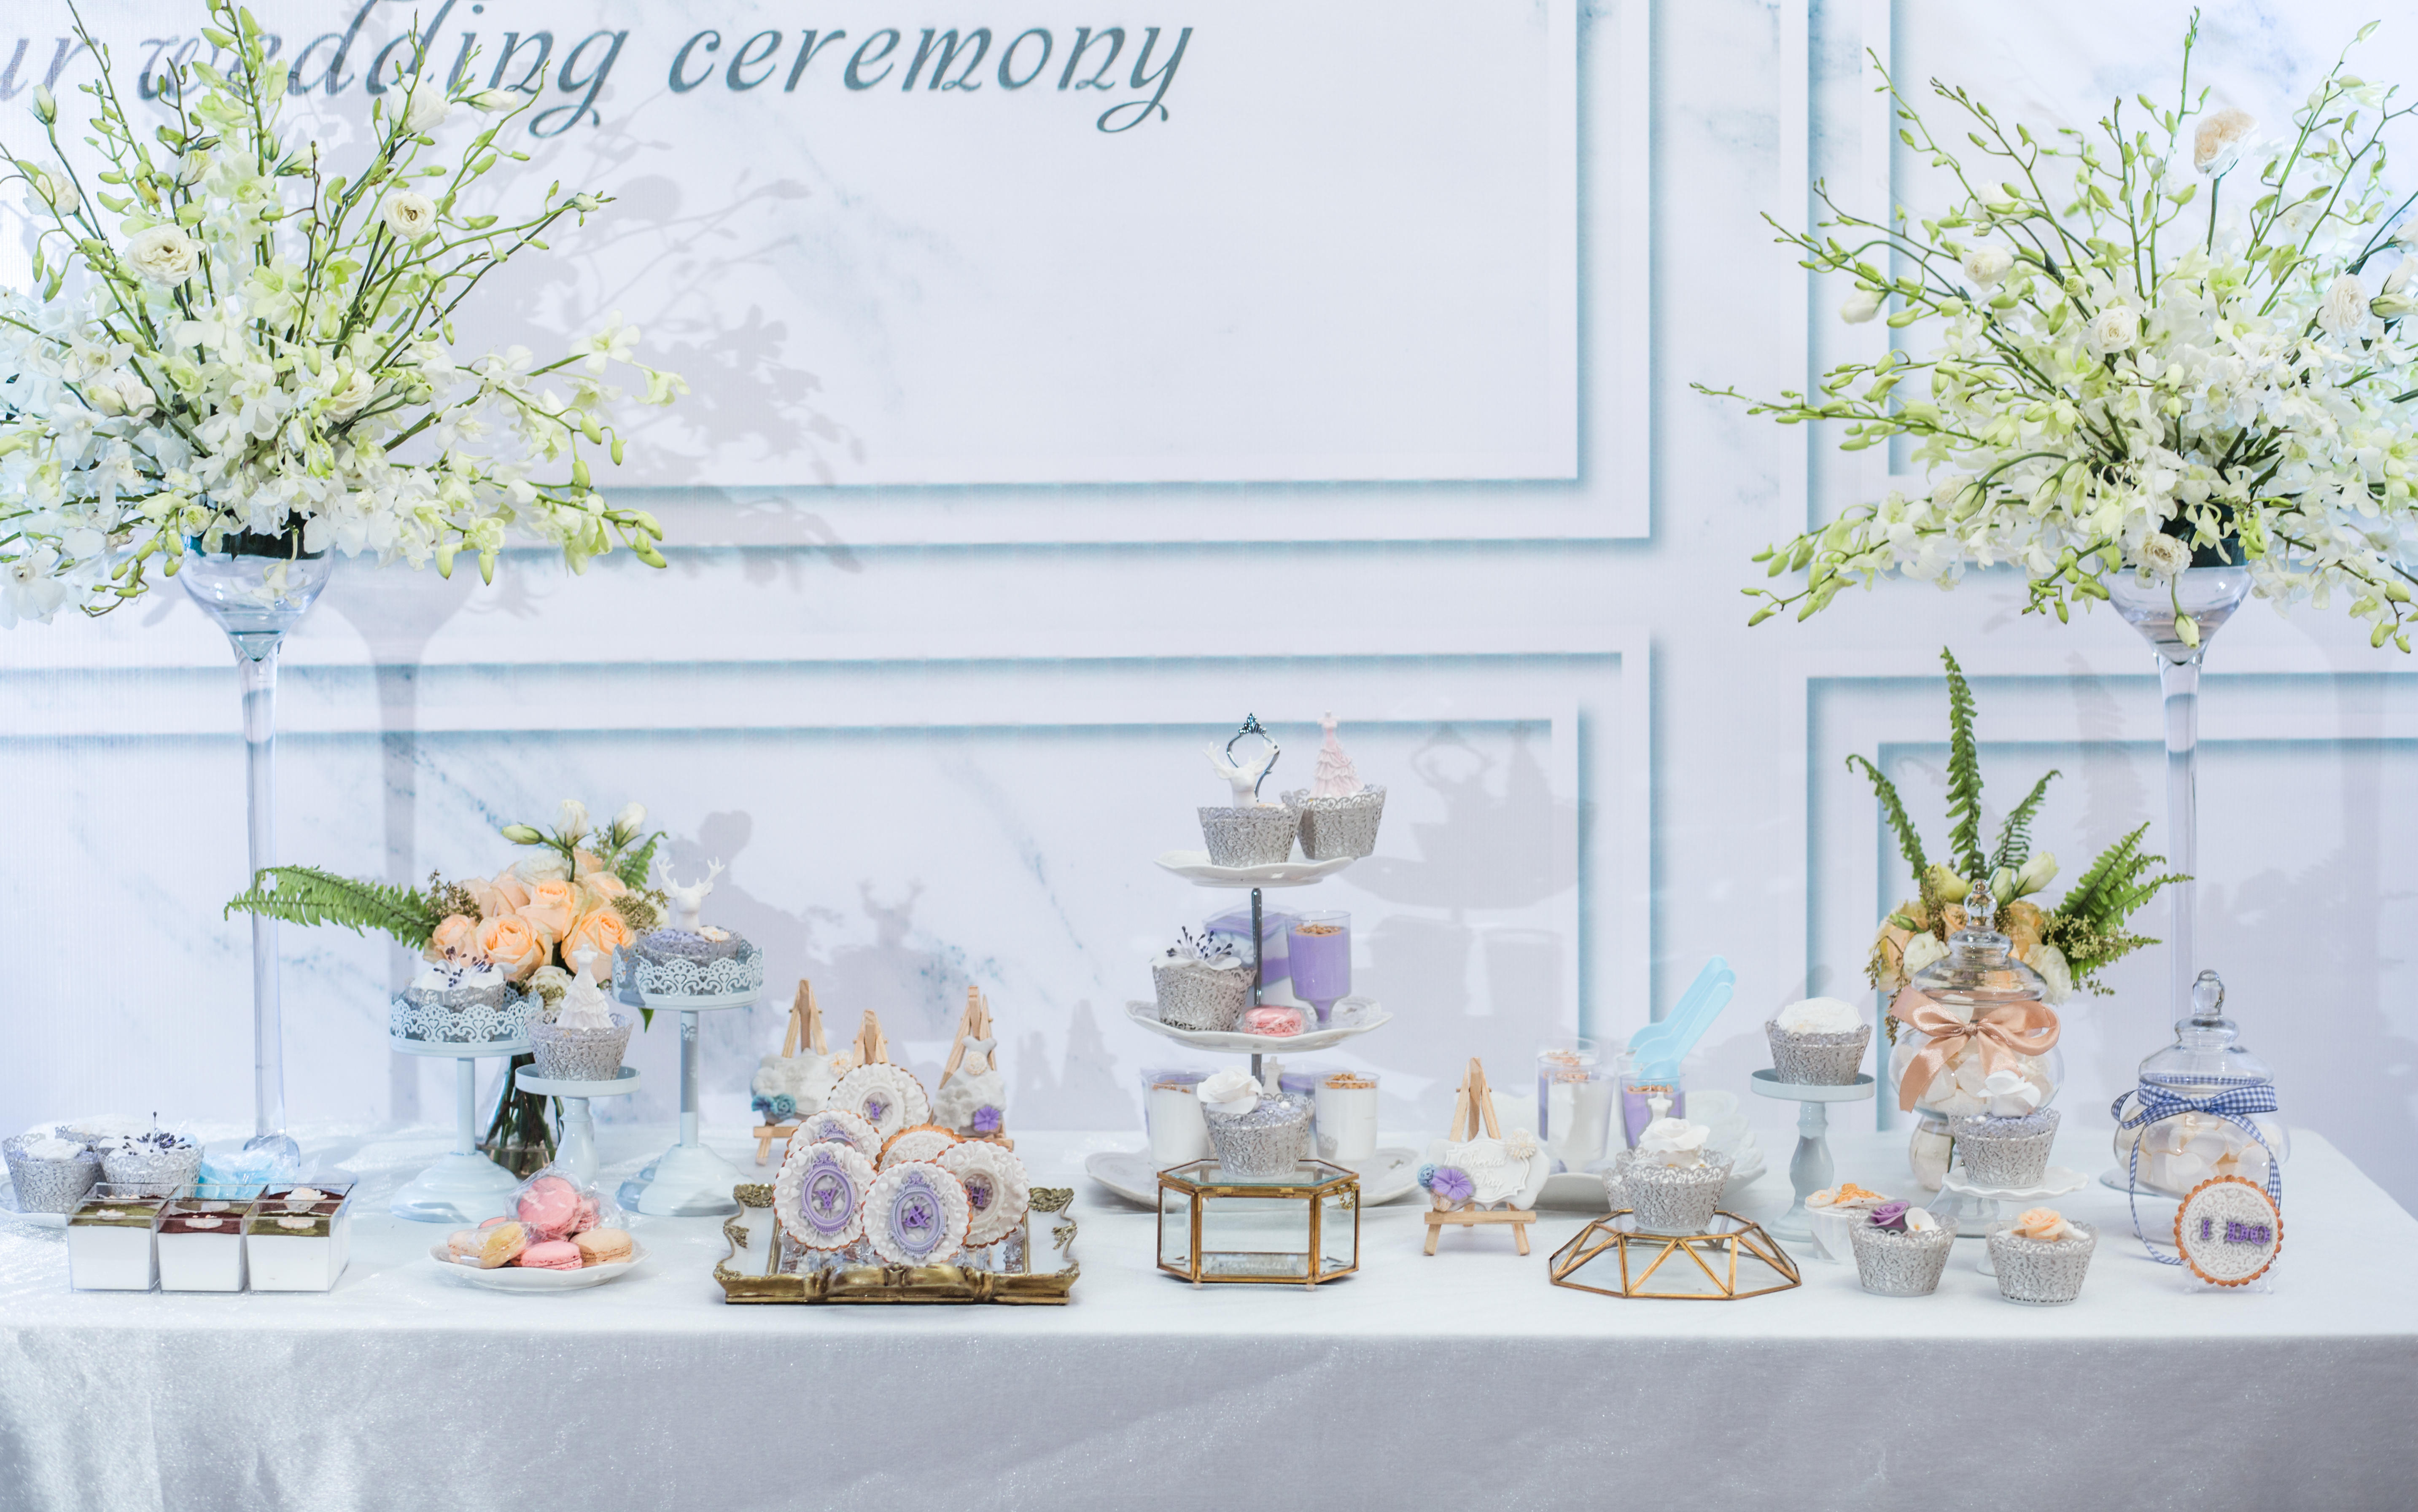 【荃家甜品】烂漫纯真白紫色系小清新婚礼甜品桌